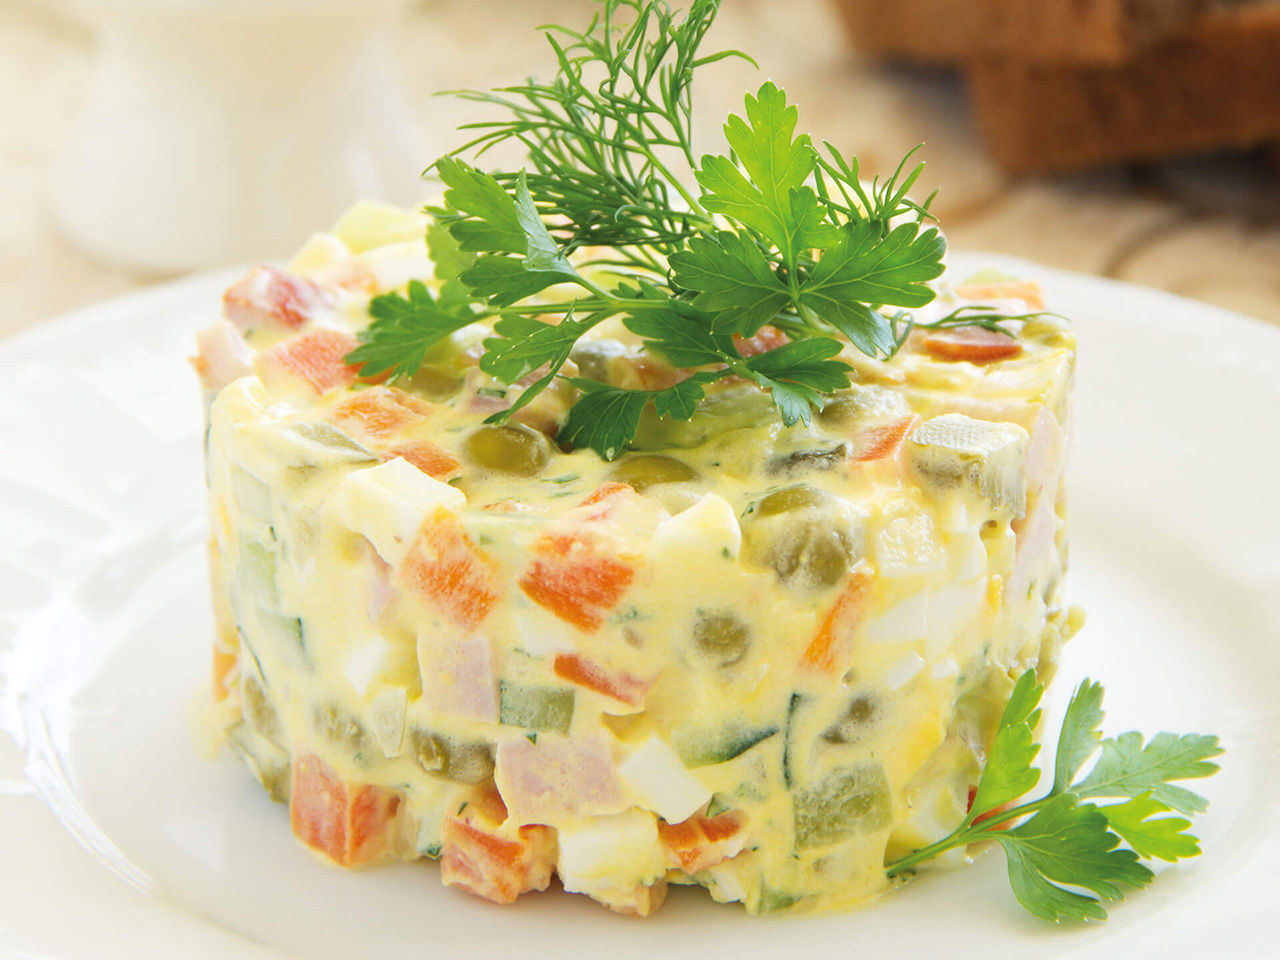 Russischer Salat